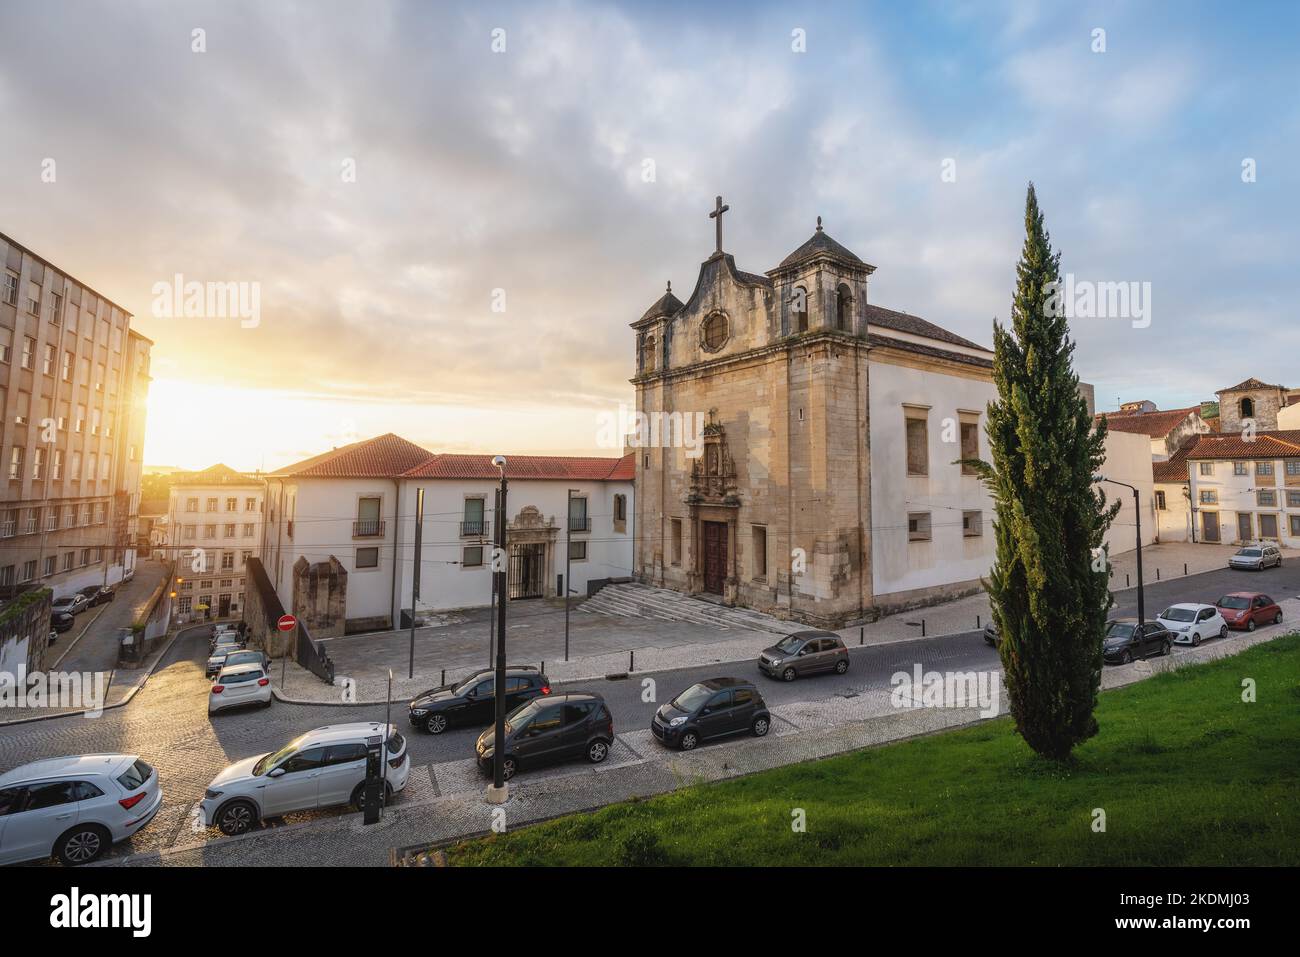 Church of Sao Joao de Almedina - Coimbra, Portugal Stock Photo